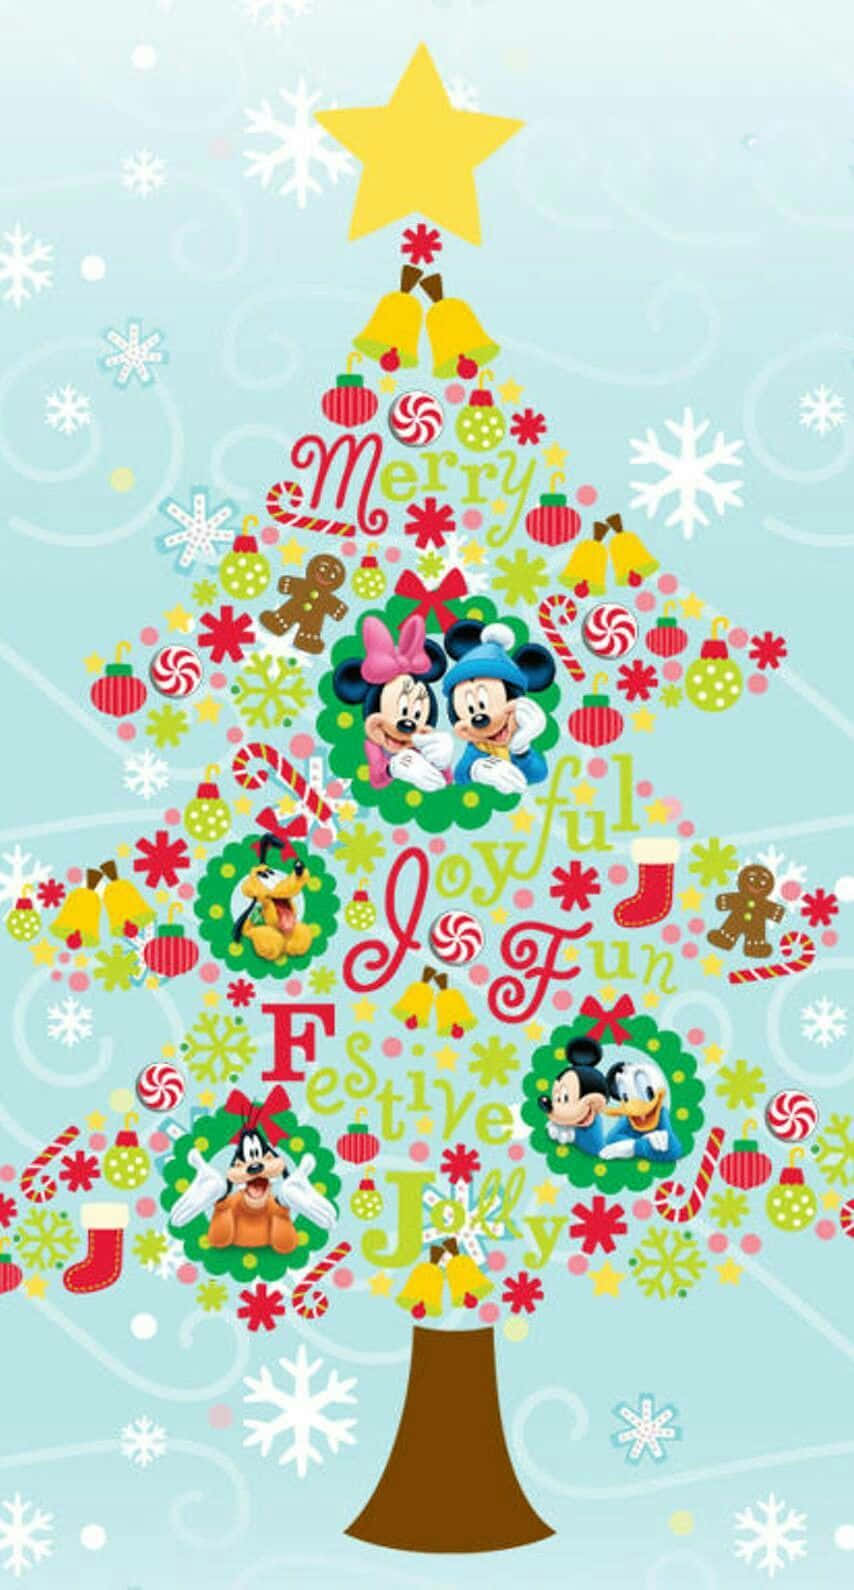 Nydglæden Ved Julen Med En Disney-tema Ipad. Wallpaper